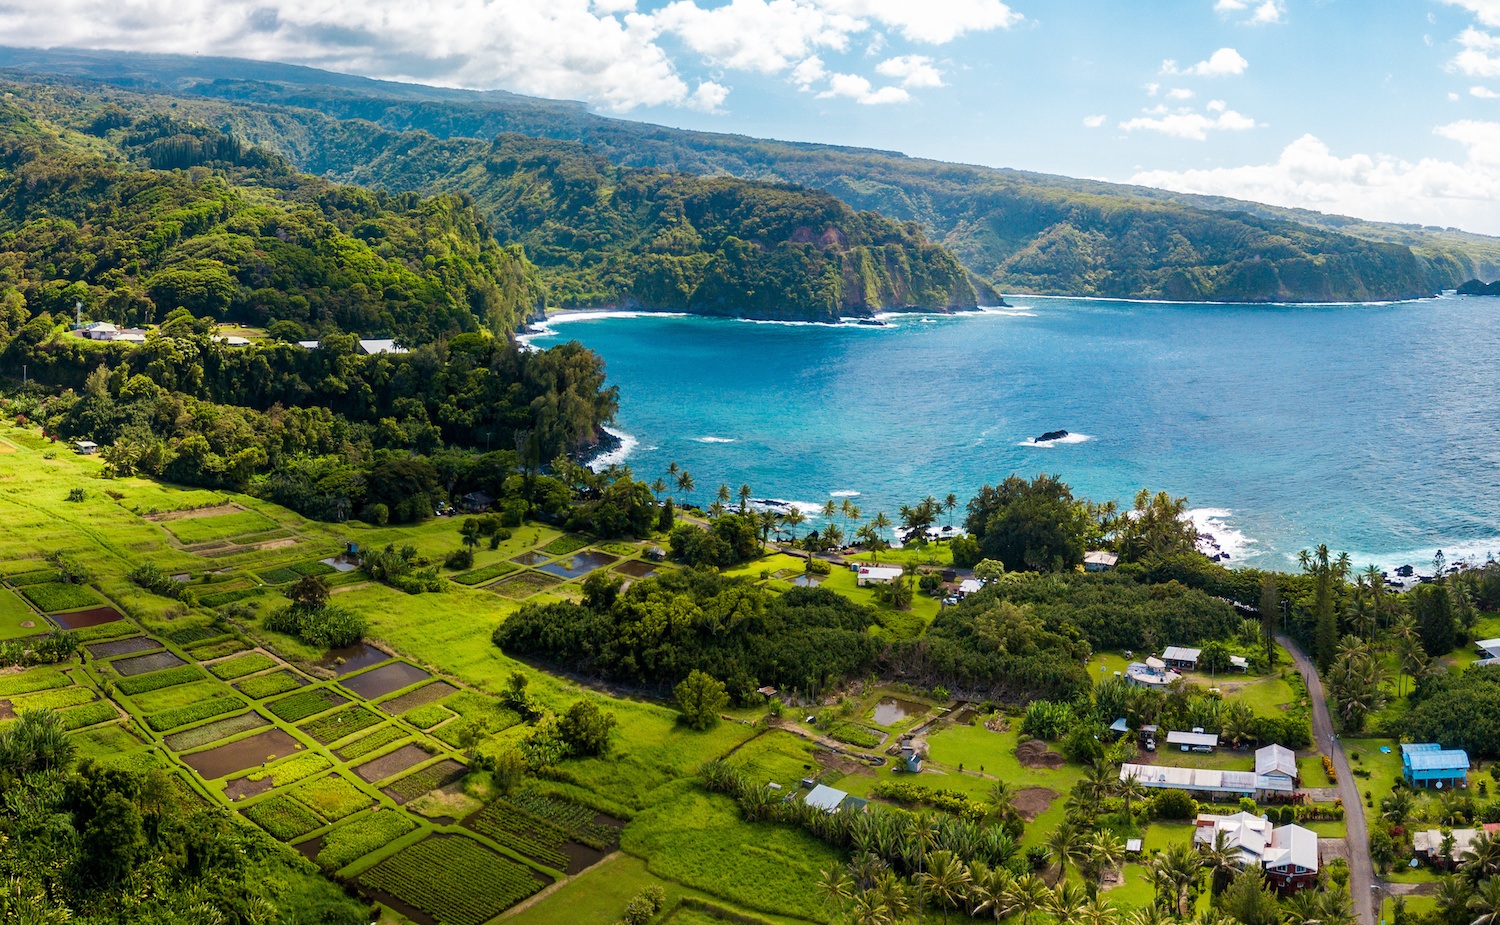 Road to Hana - Maui itinerary